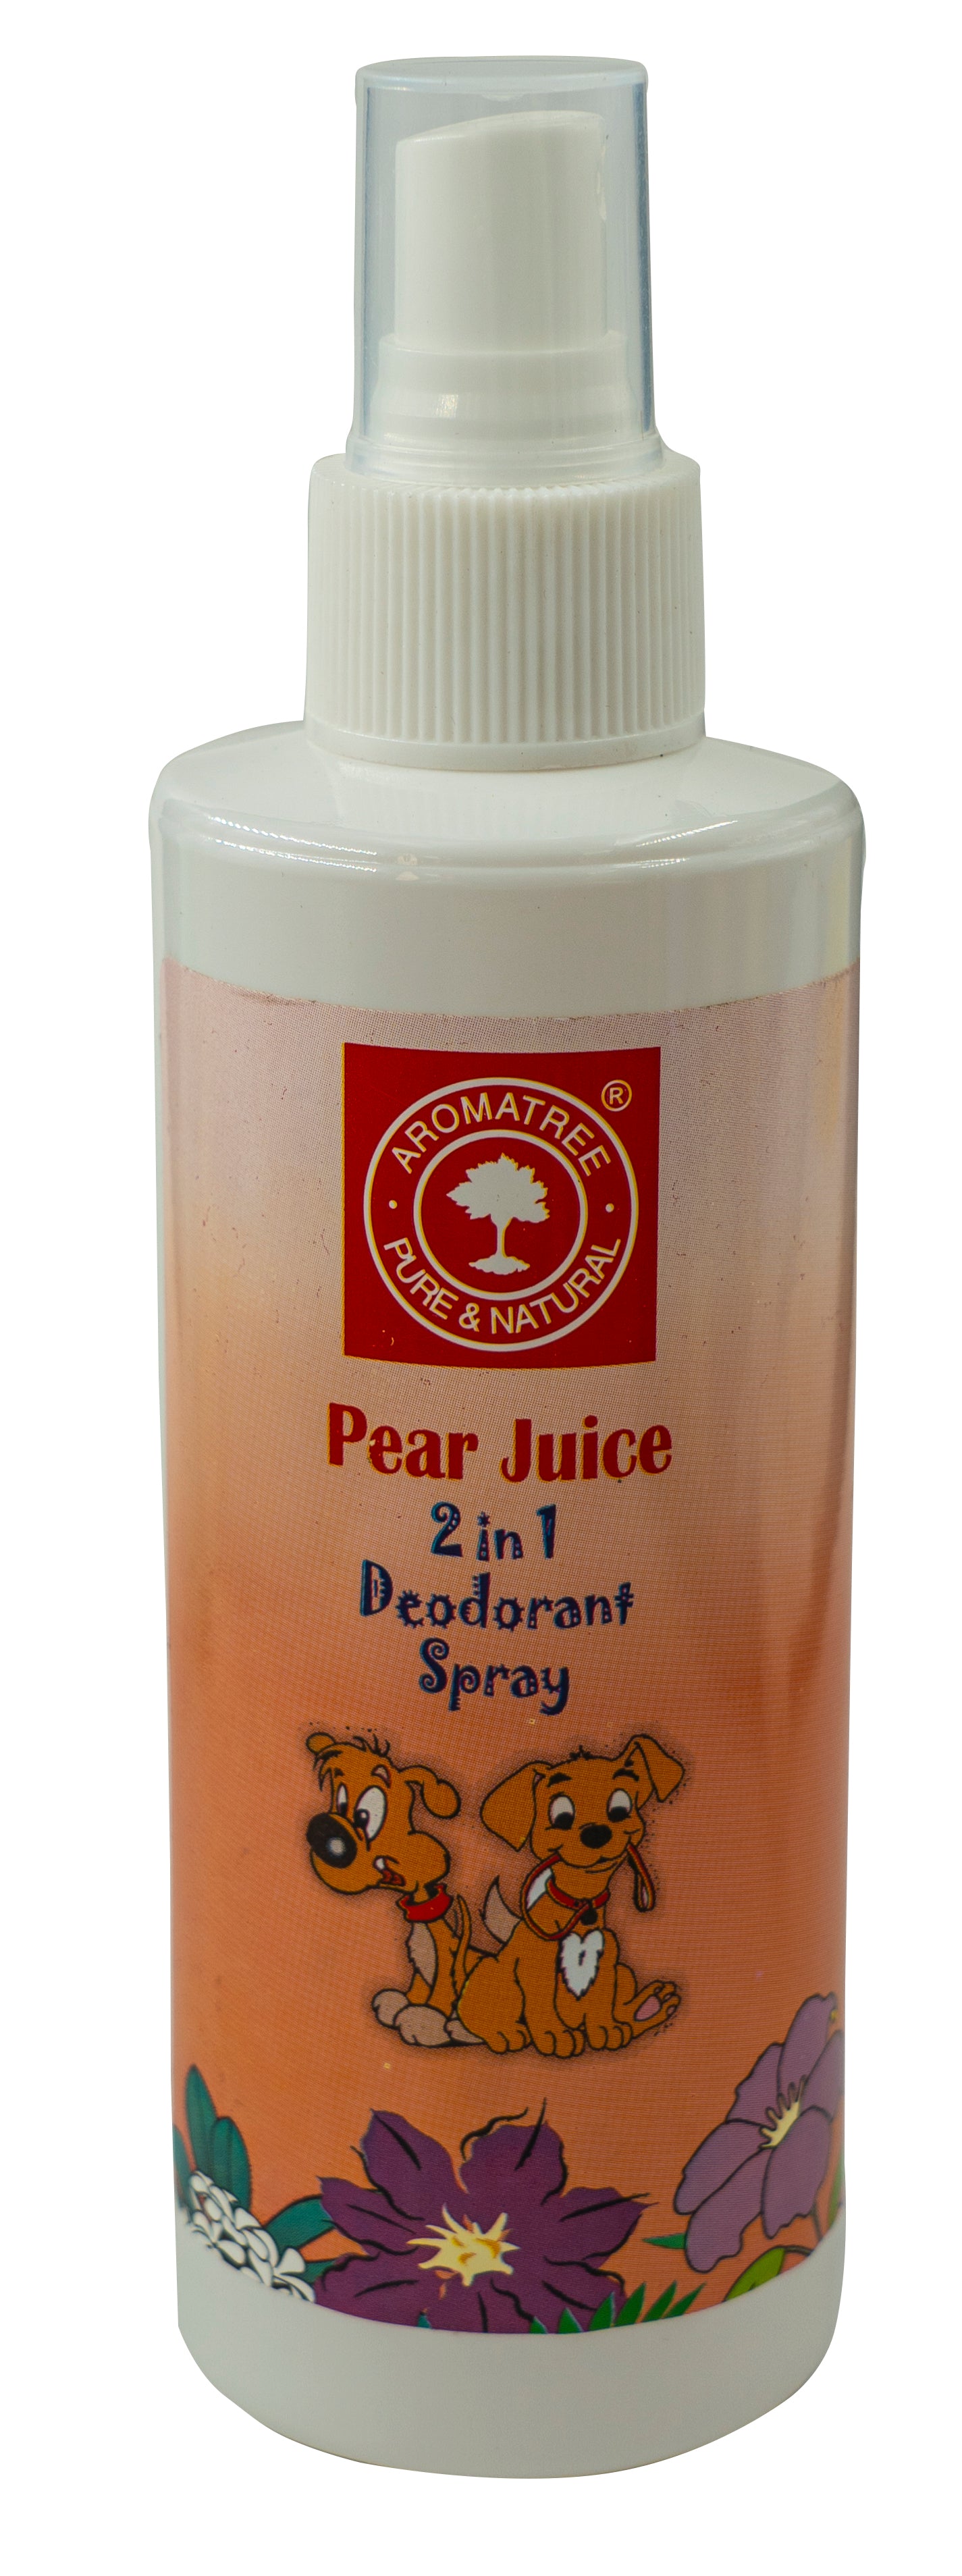 Aromatree Pear Juice Deodorant Spray For Dogs